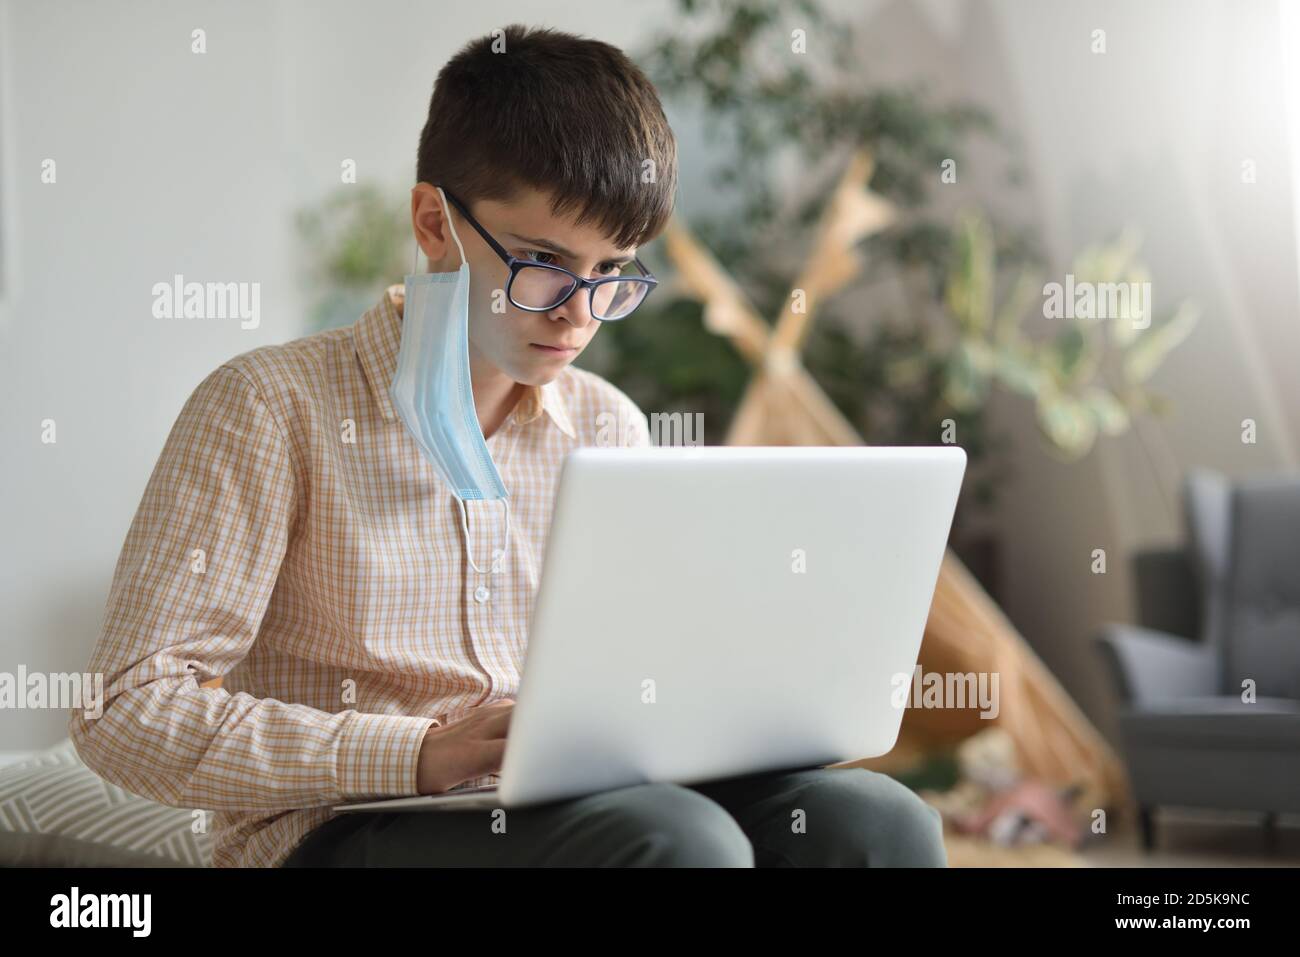 Teen boy toglie la sua maschera protettiva e impara a distanza da un computer portatile Foto Stock